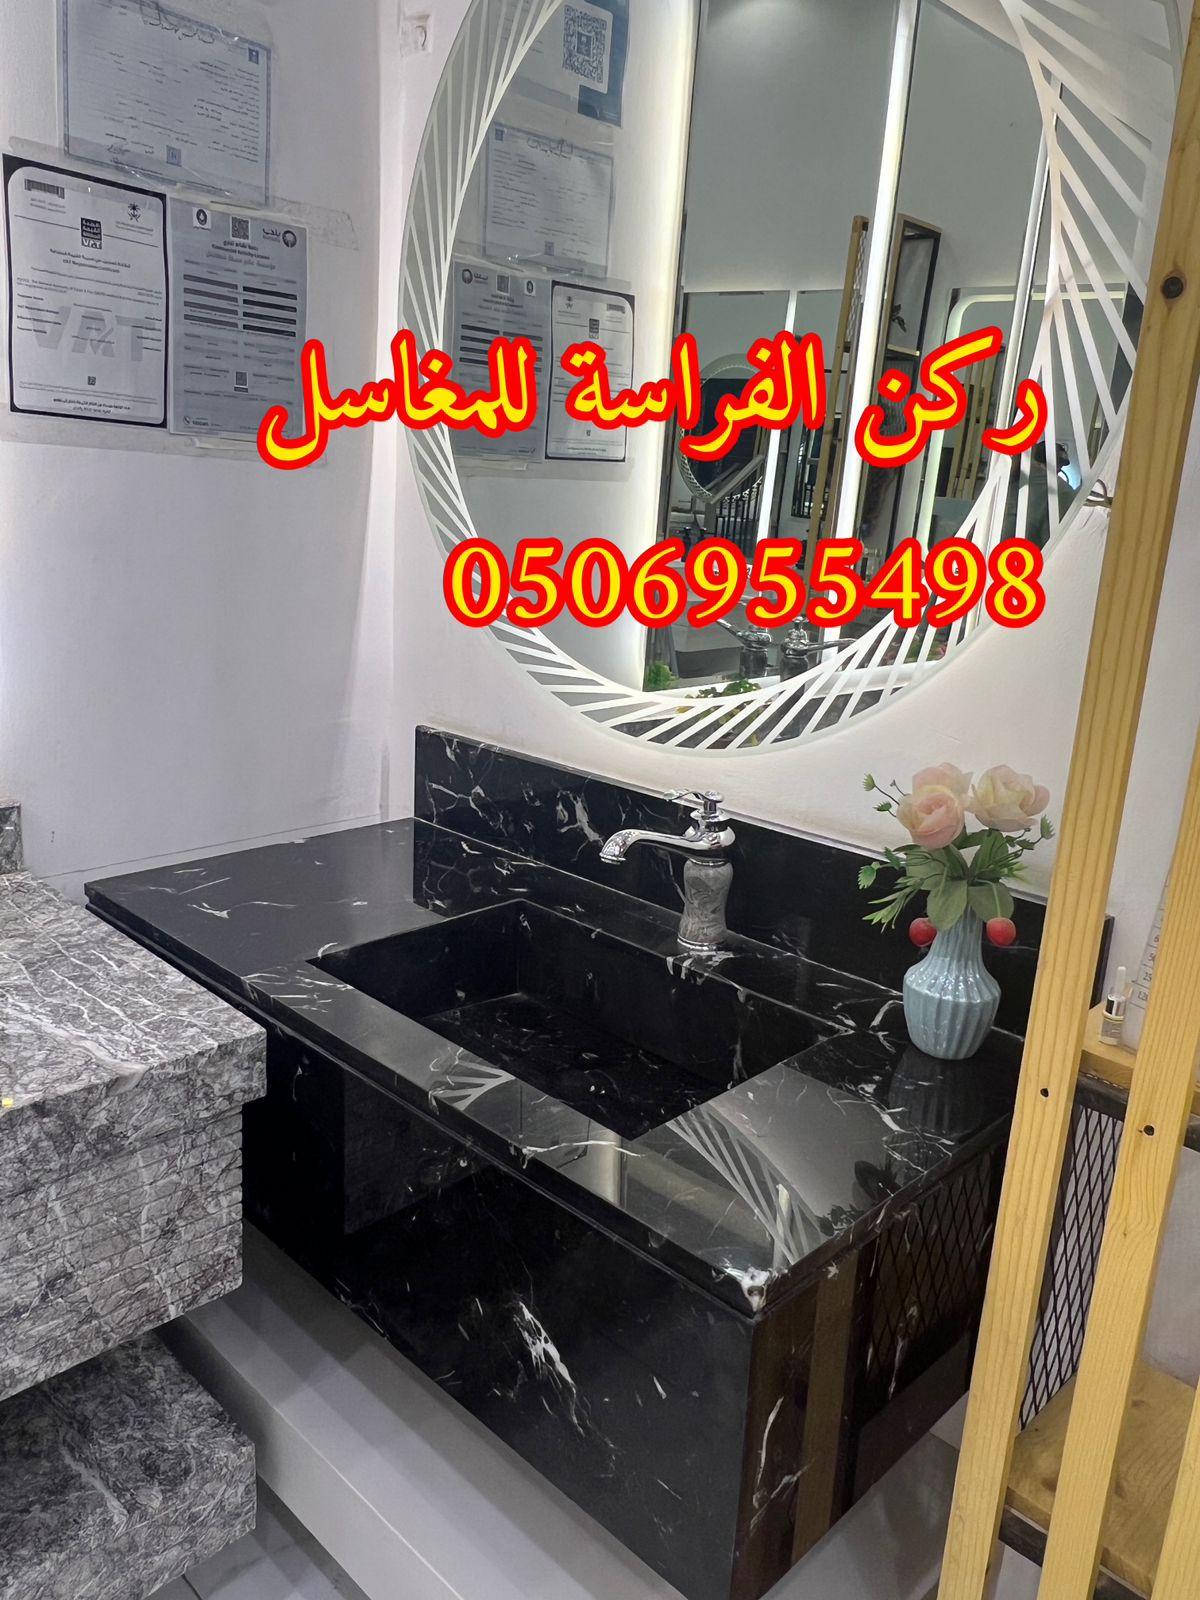 احواض مغاسل رخام في الرياض,0506955498 662309181